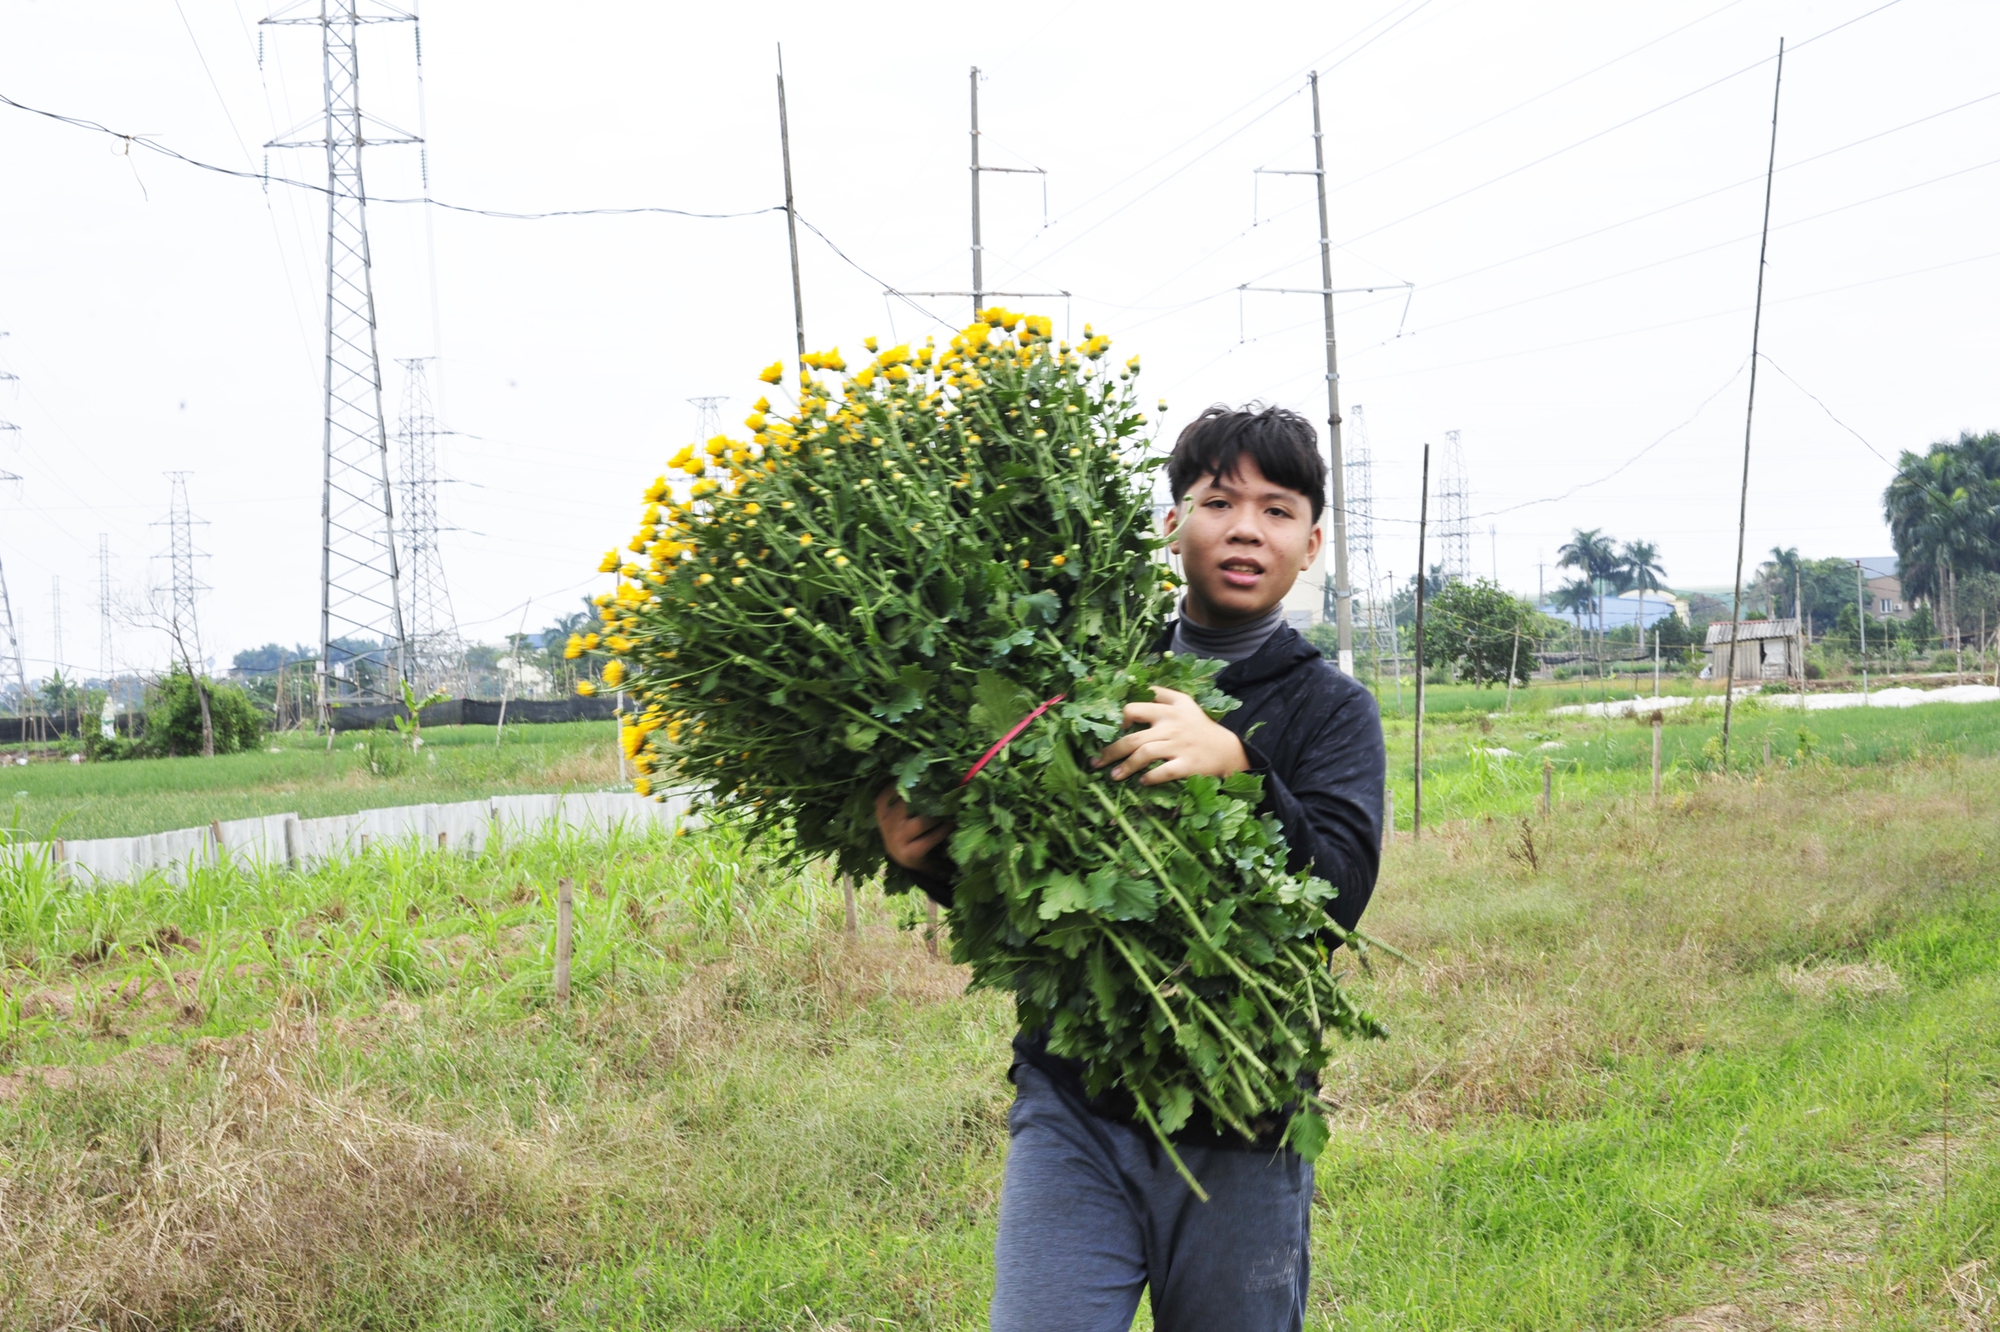 Hoa cúc là đặc trưng của làng hoa Tây Tựu mang lại thu nhập ổn định cho người dân.